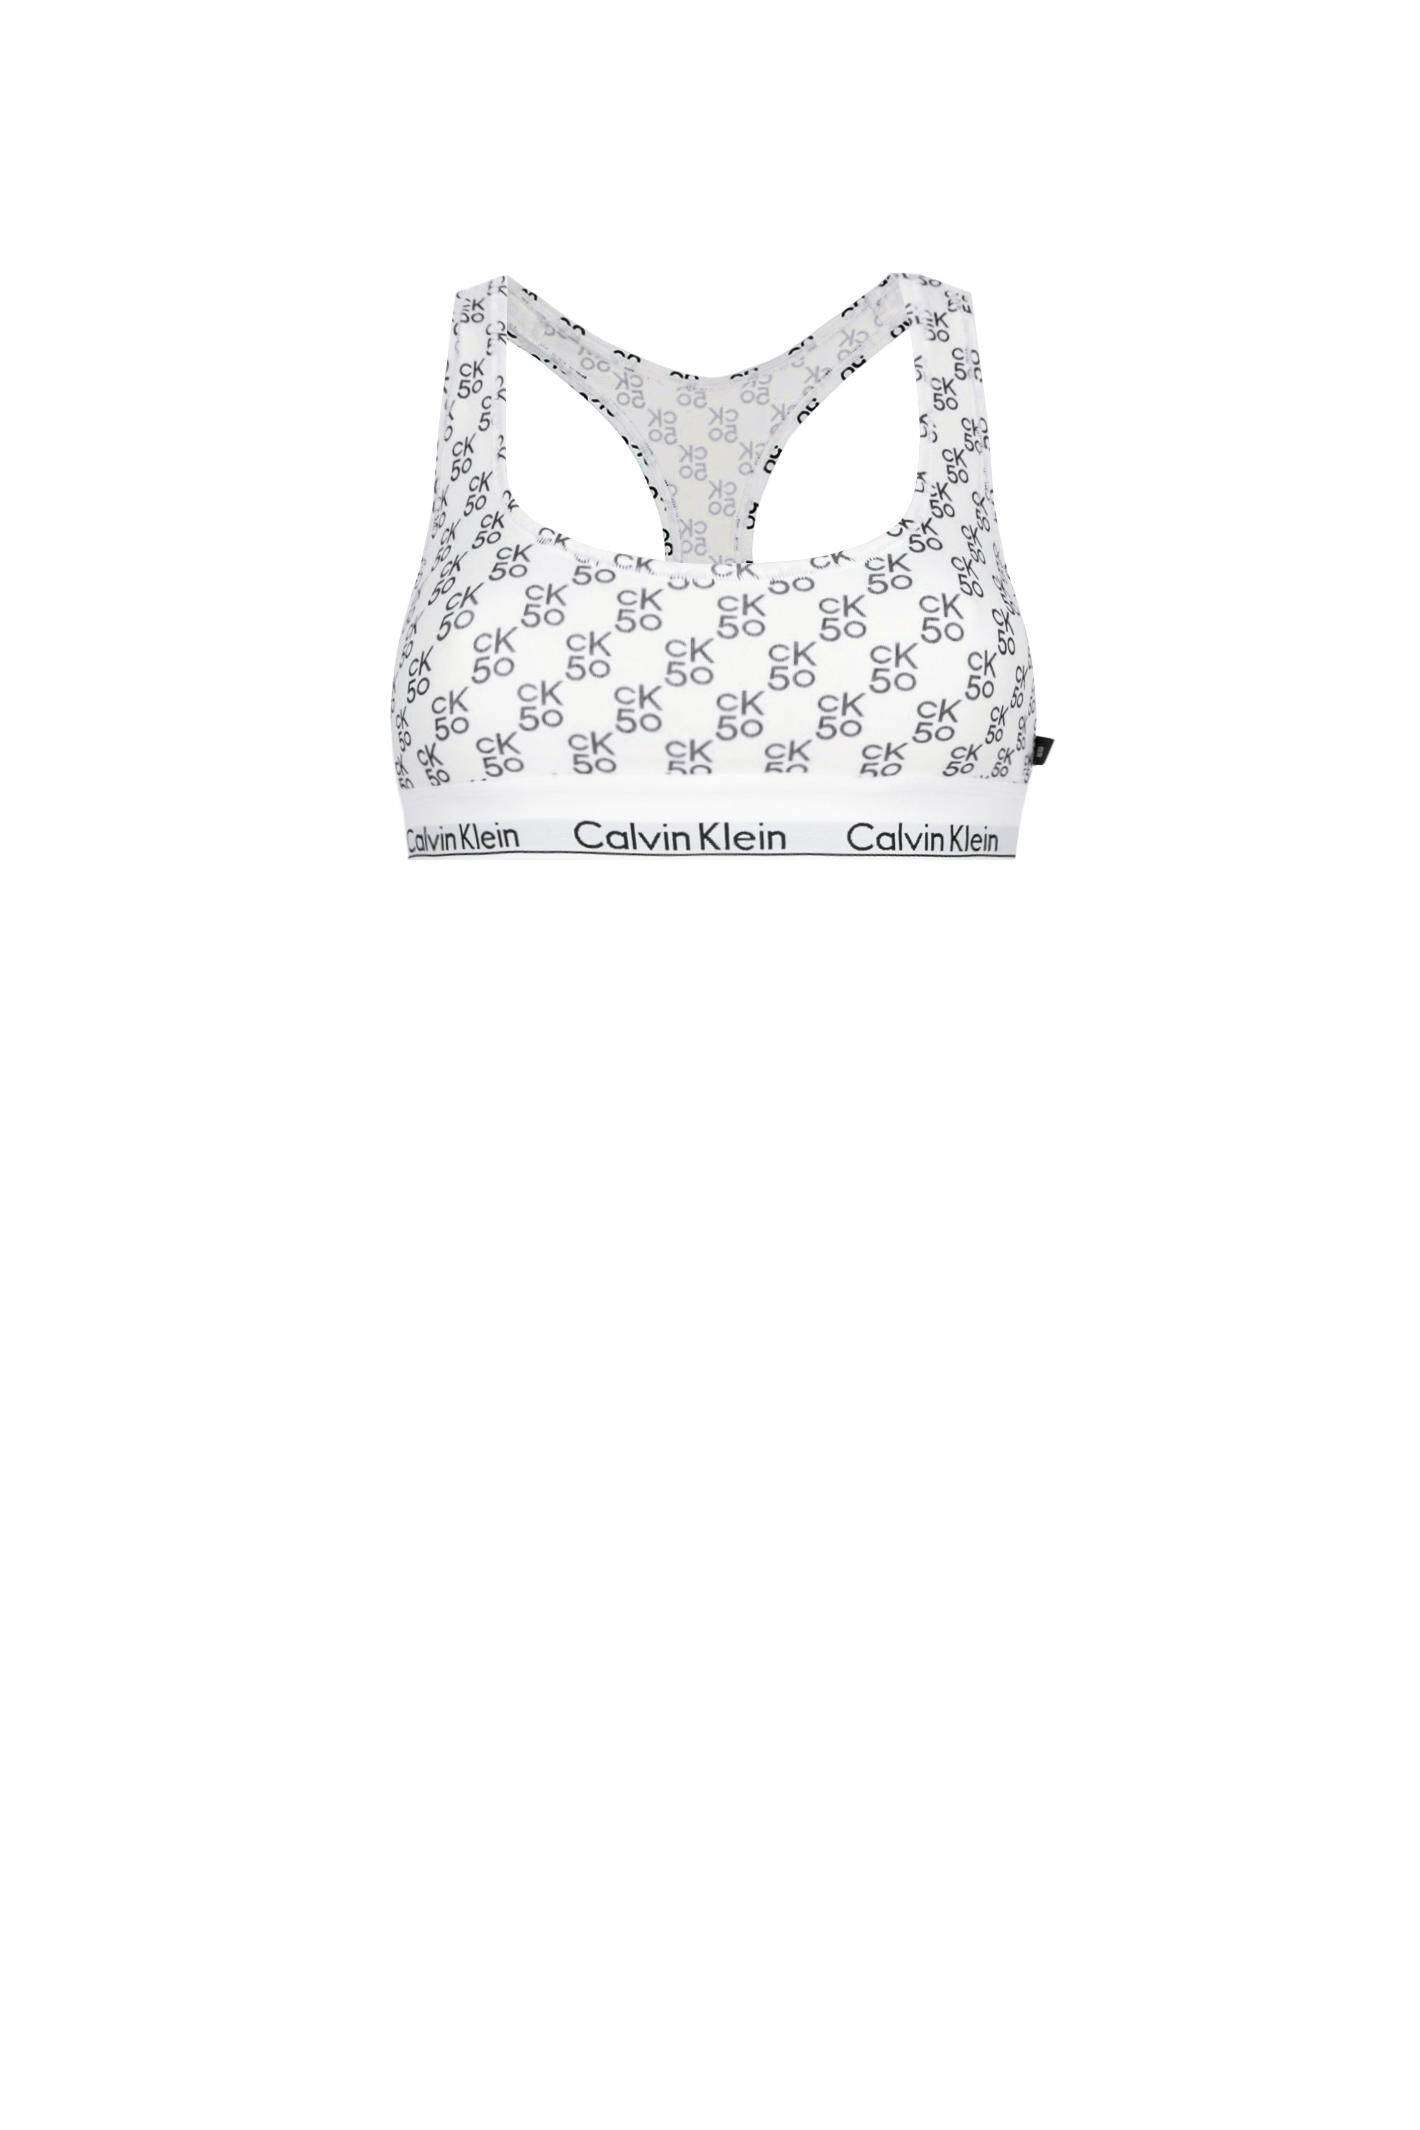 Calvin Klein Underwear CK One Bralette, Charming Roses, S